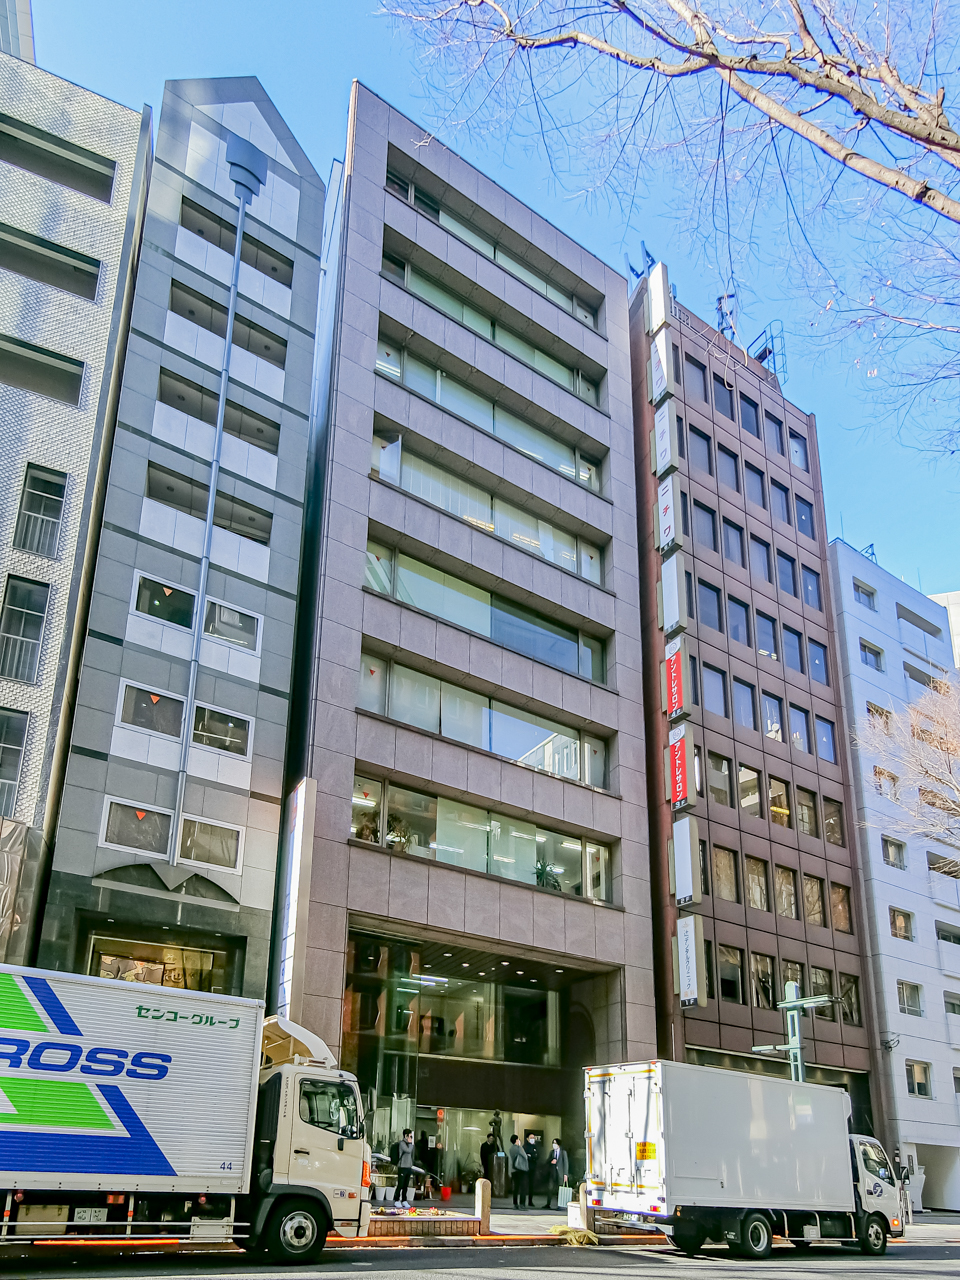 Shibuya Hashimotobuilding